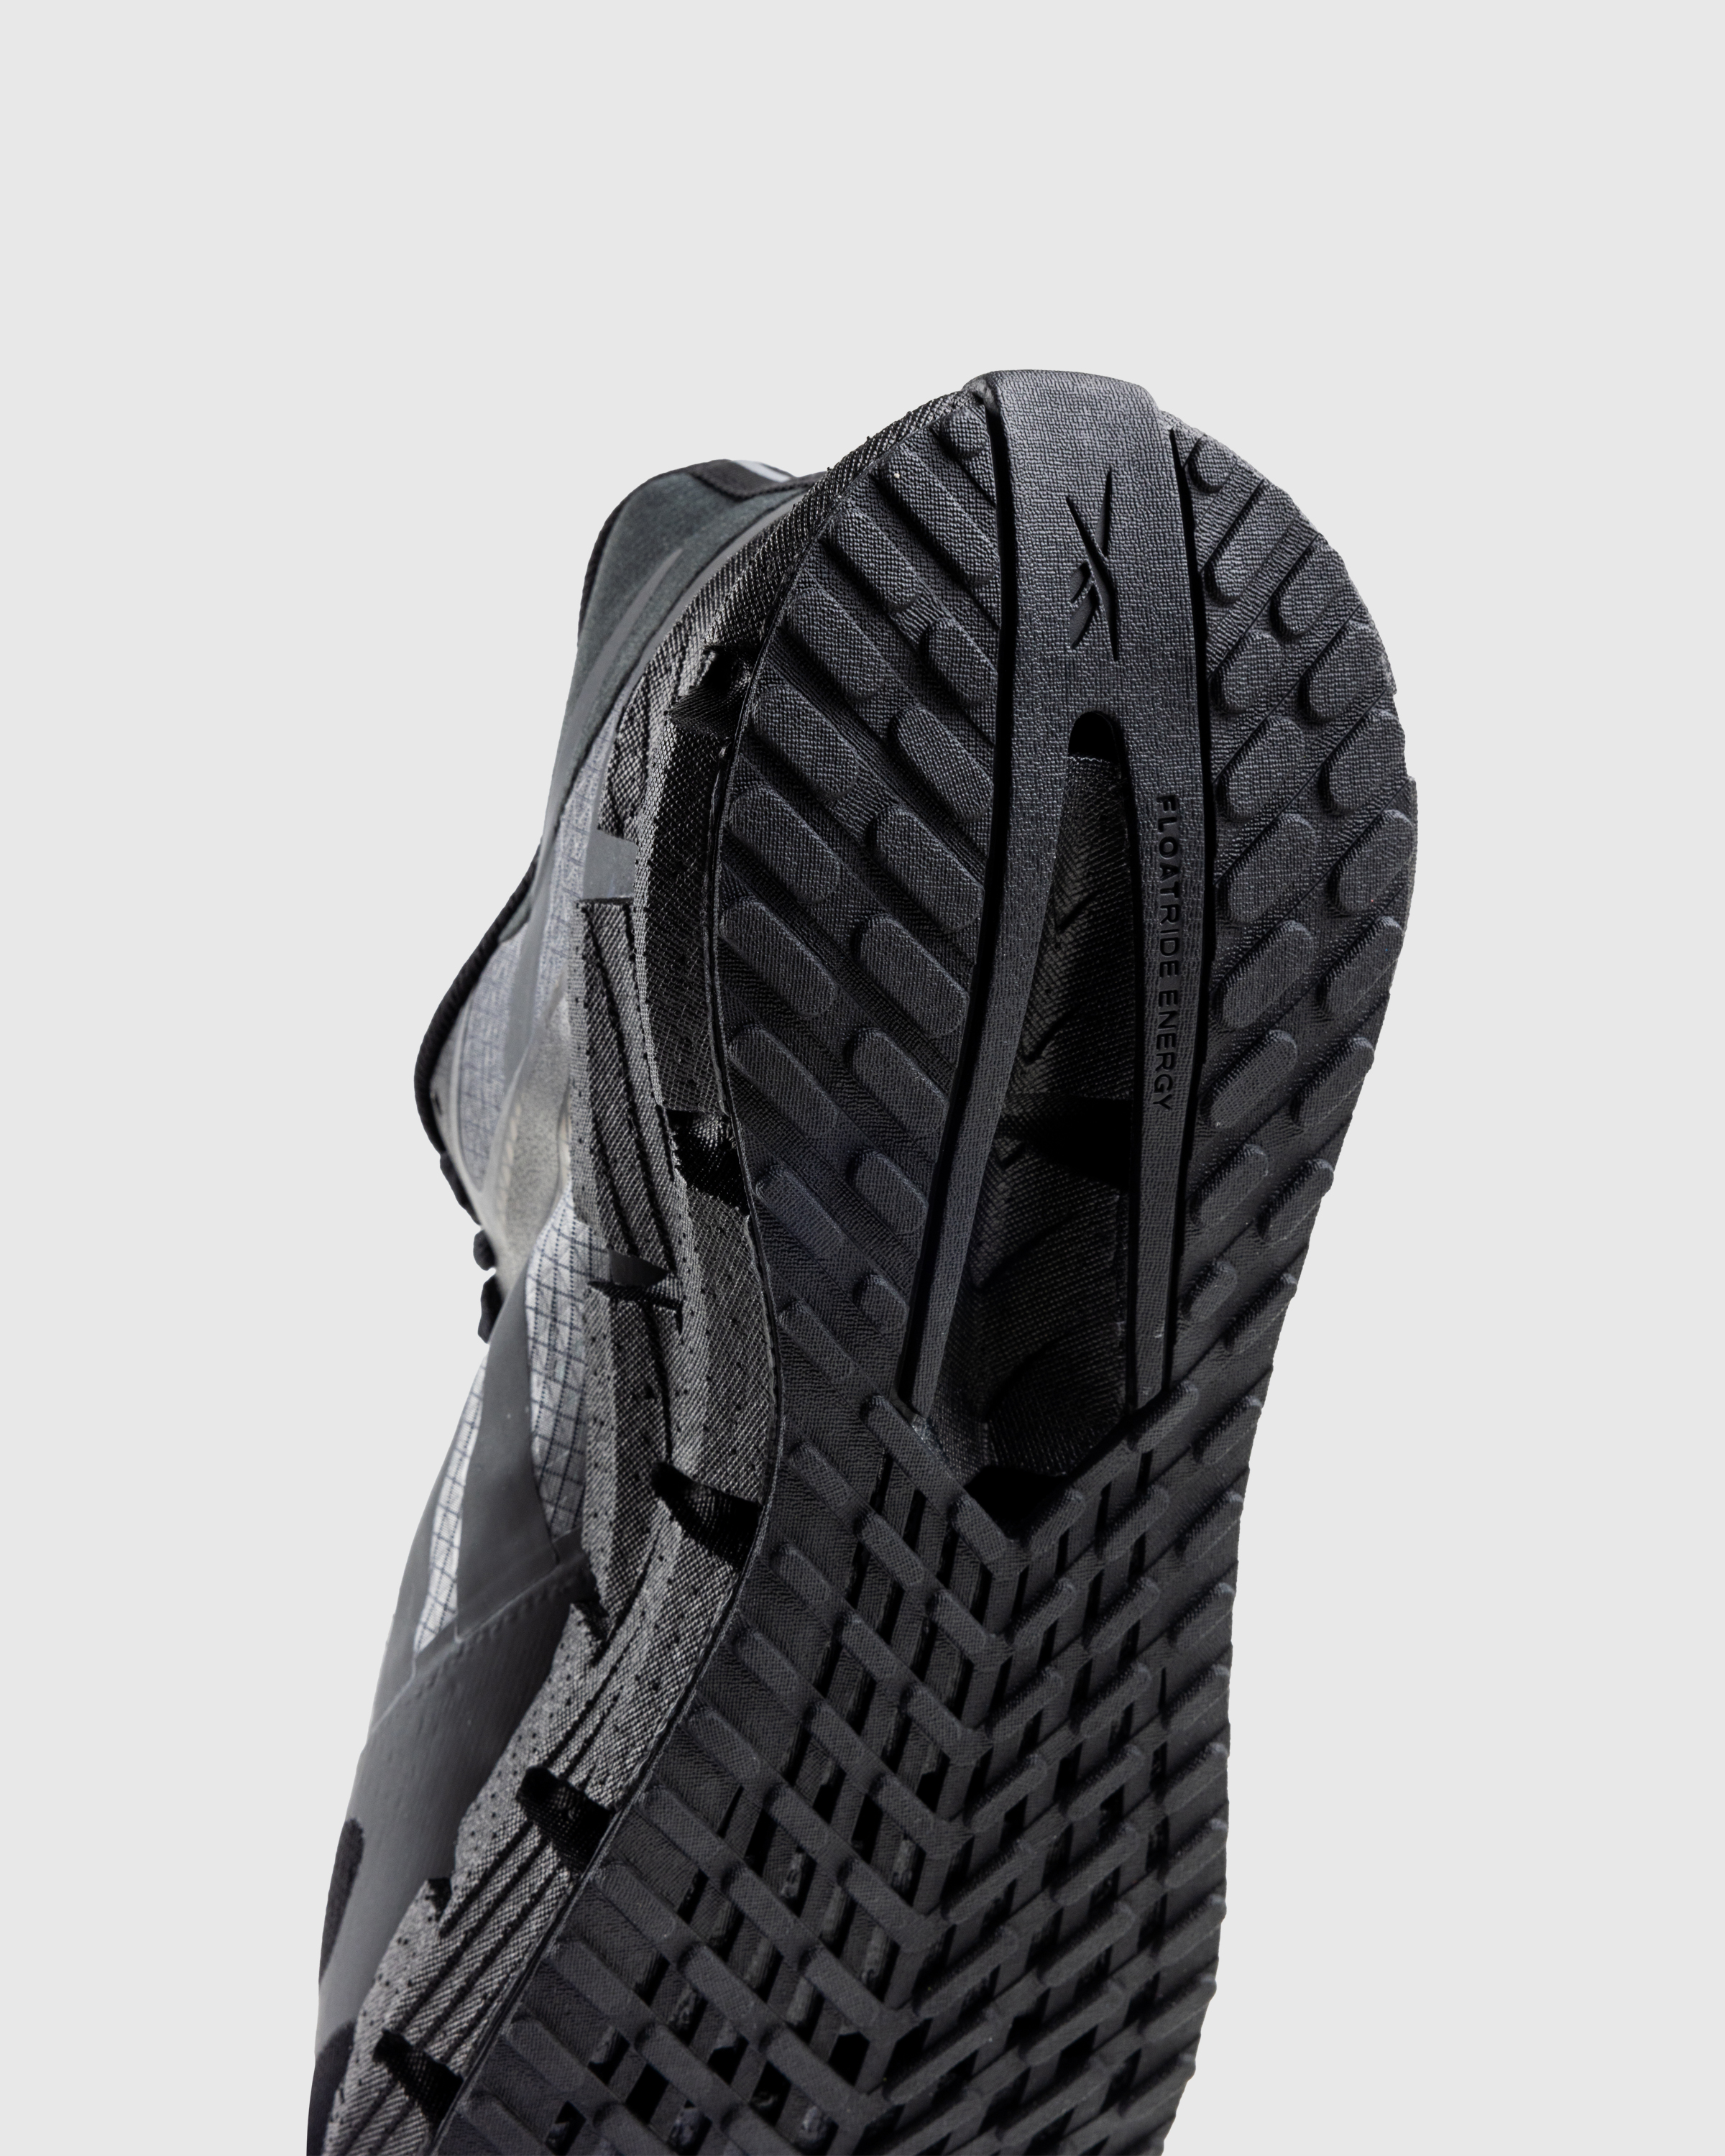 Reebok – FloatZig Black - Low Top Sneakers - Black - Image 6